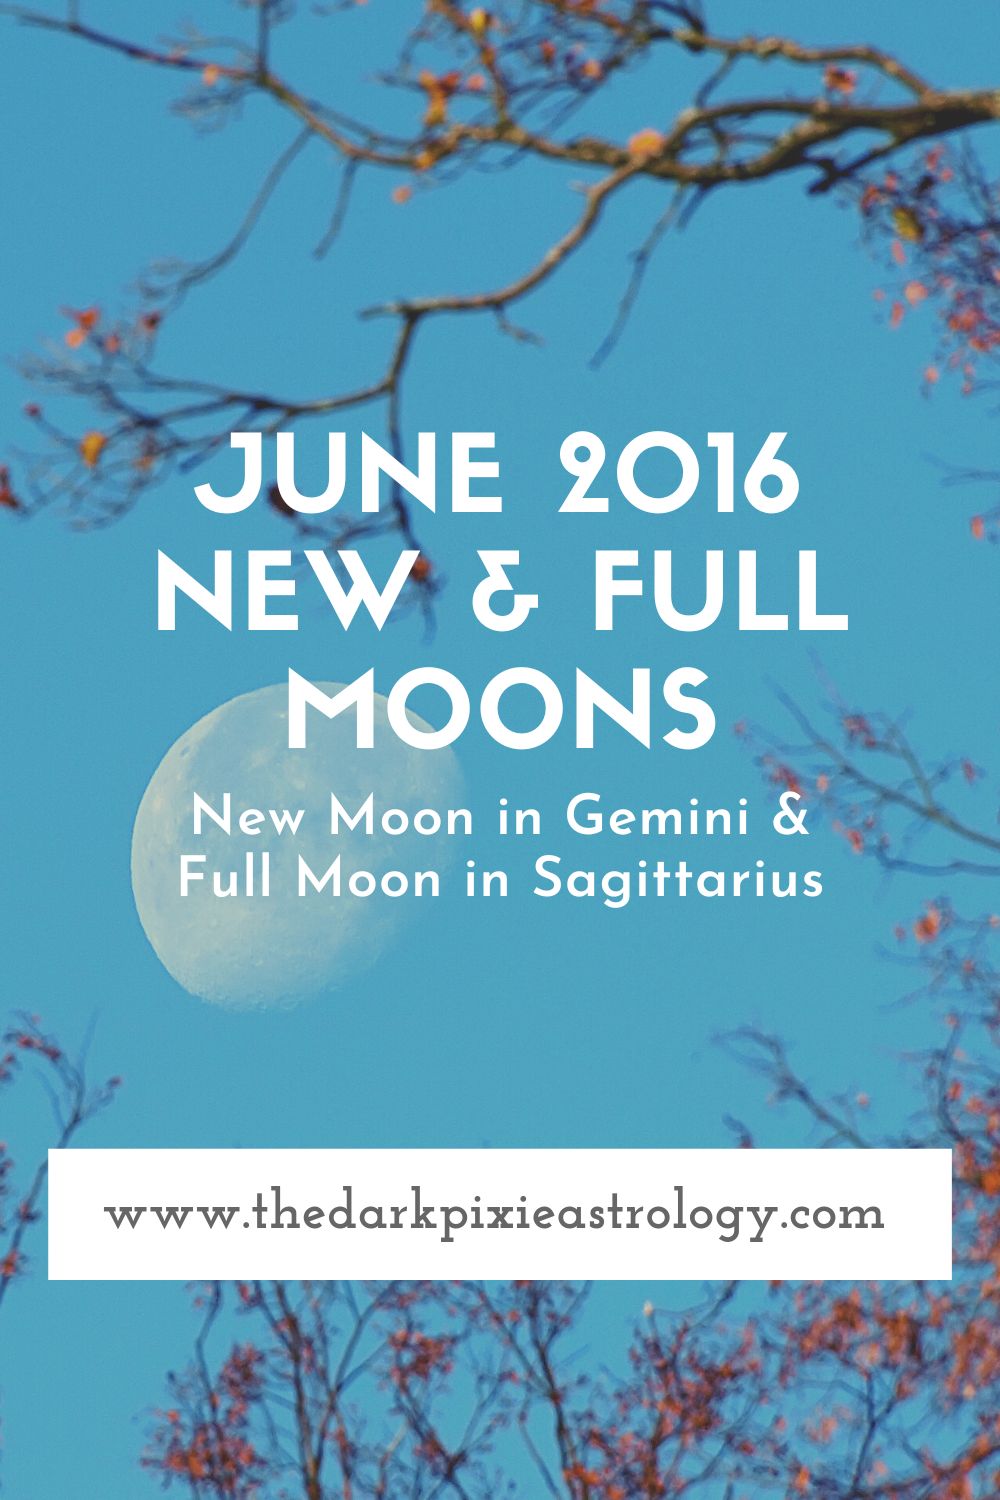 June 2016 New & Full Moons - The Dark Pixie Astrology